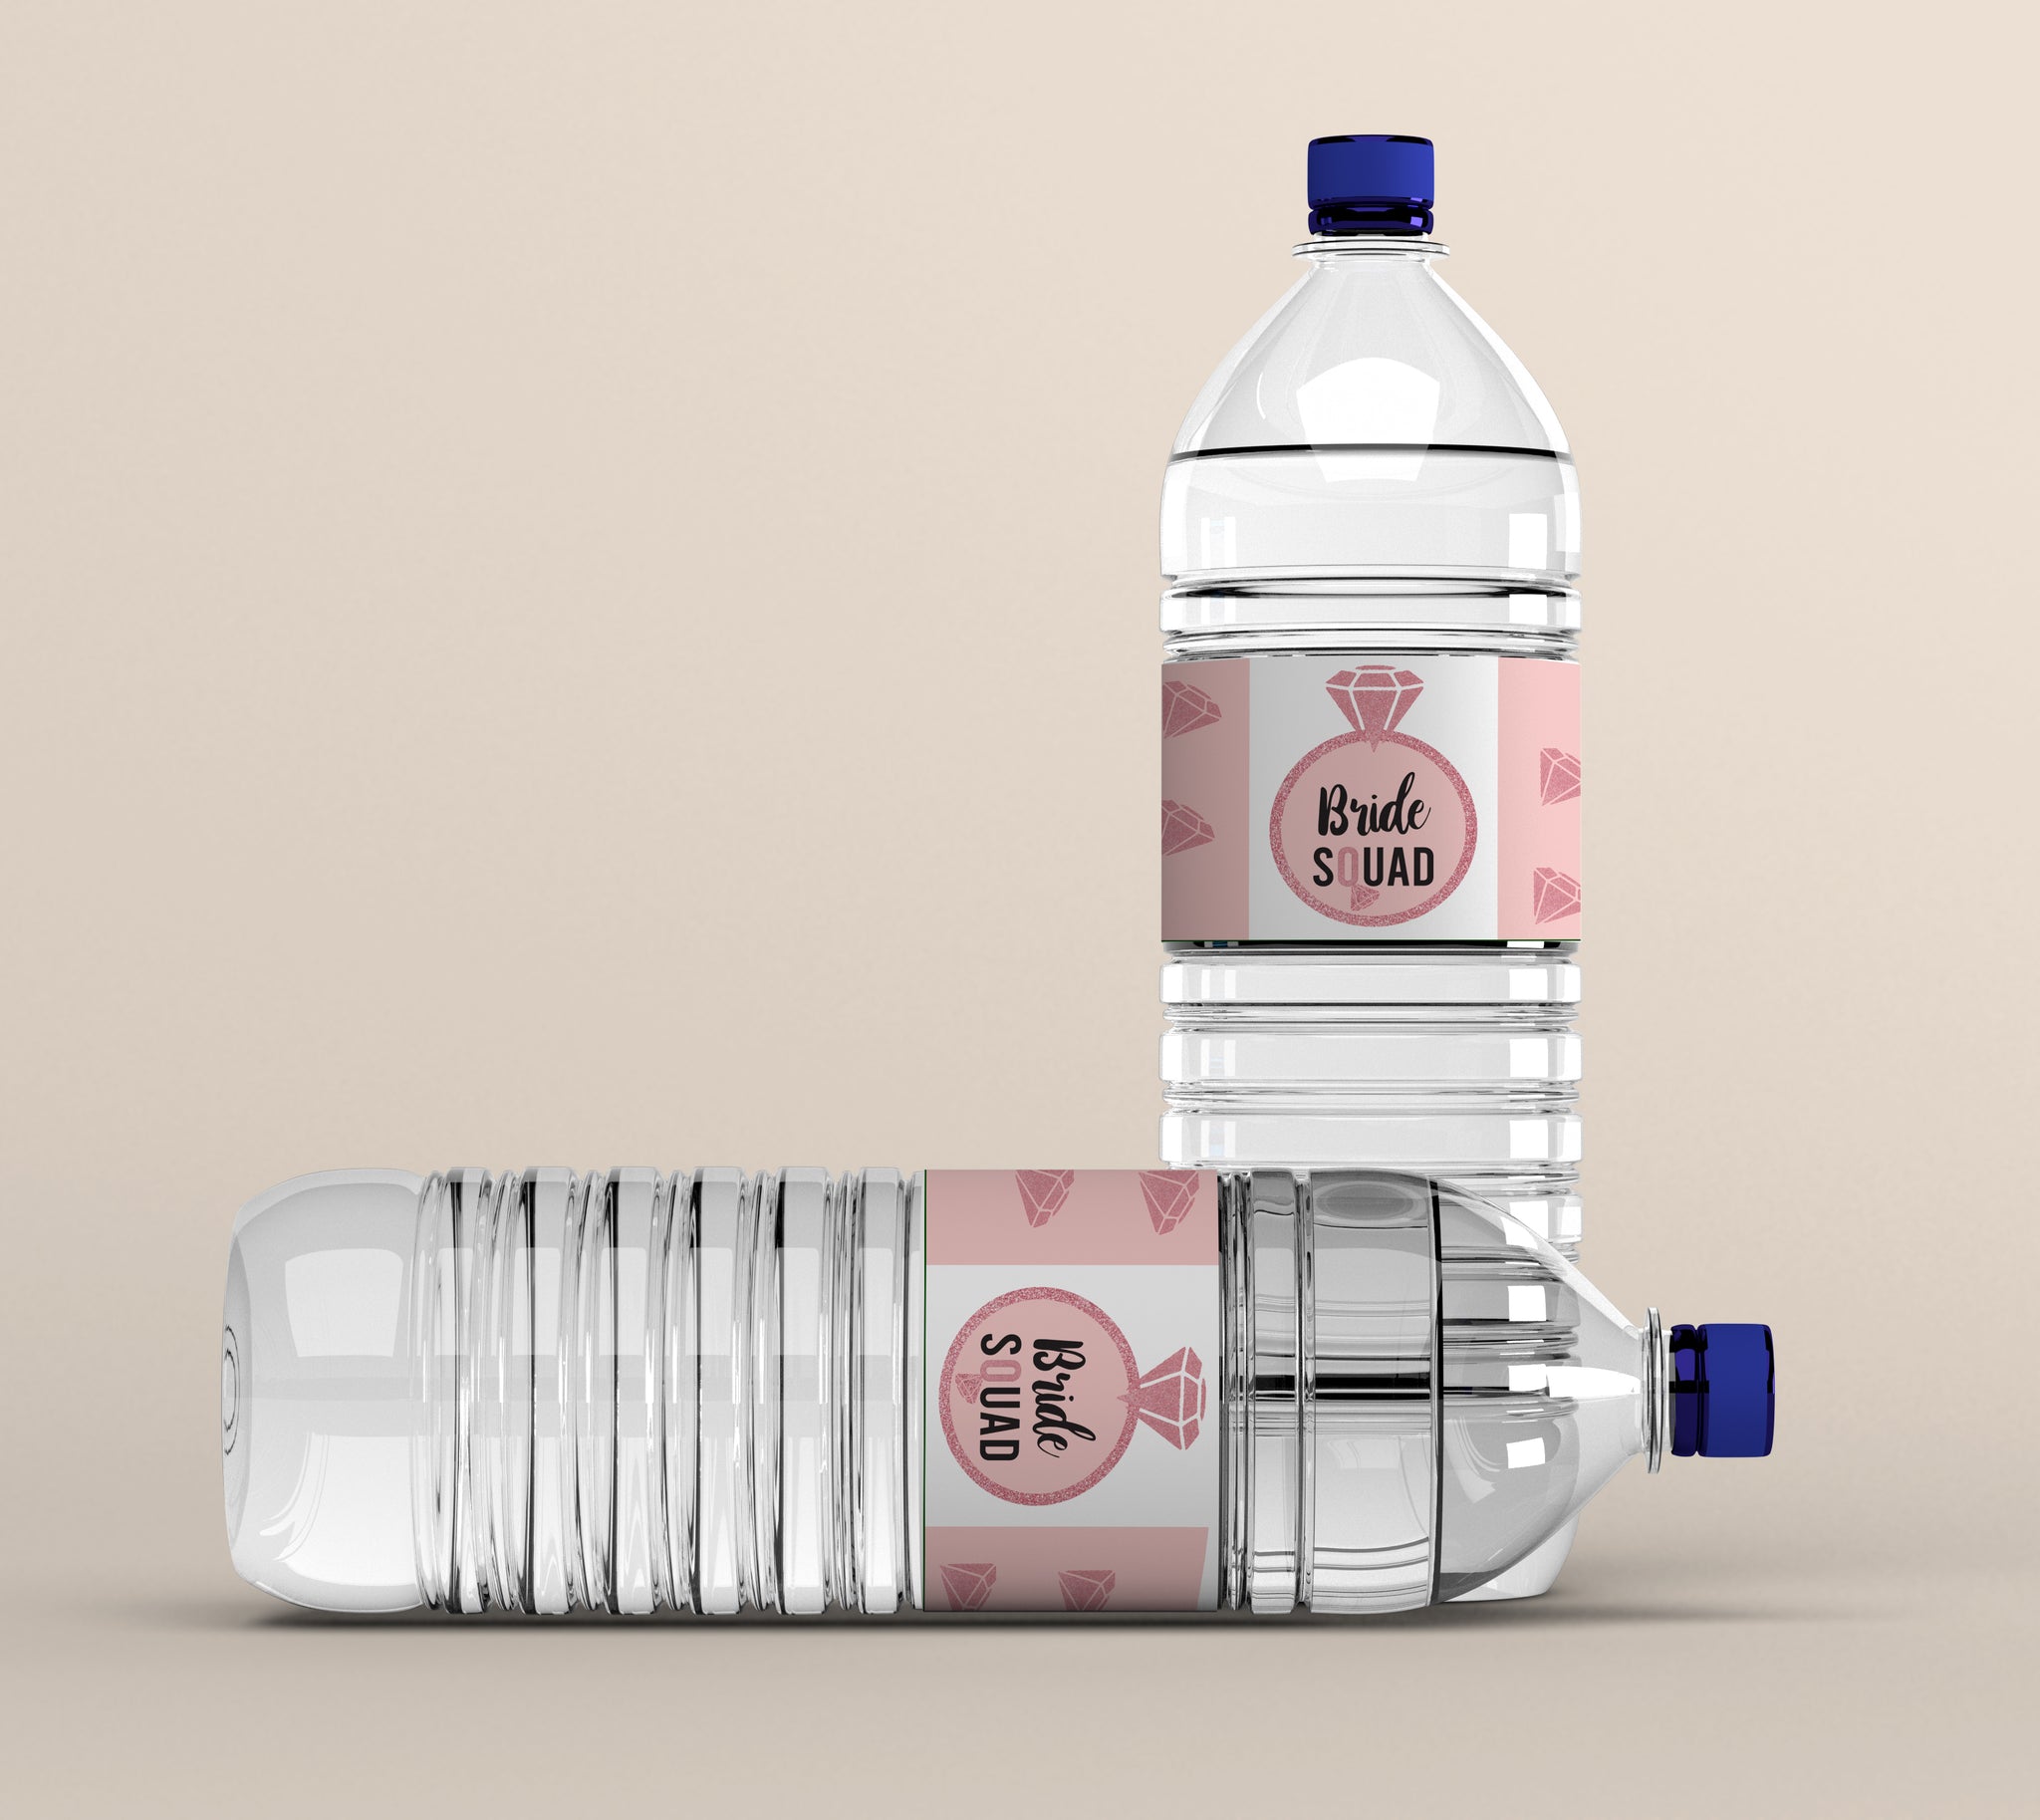 chanel water bottle stickers